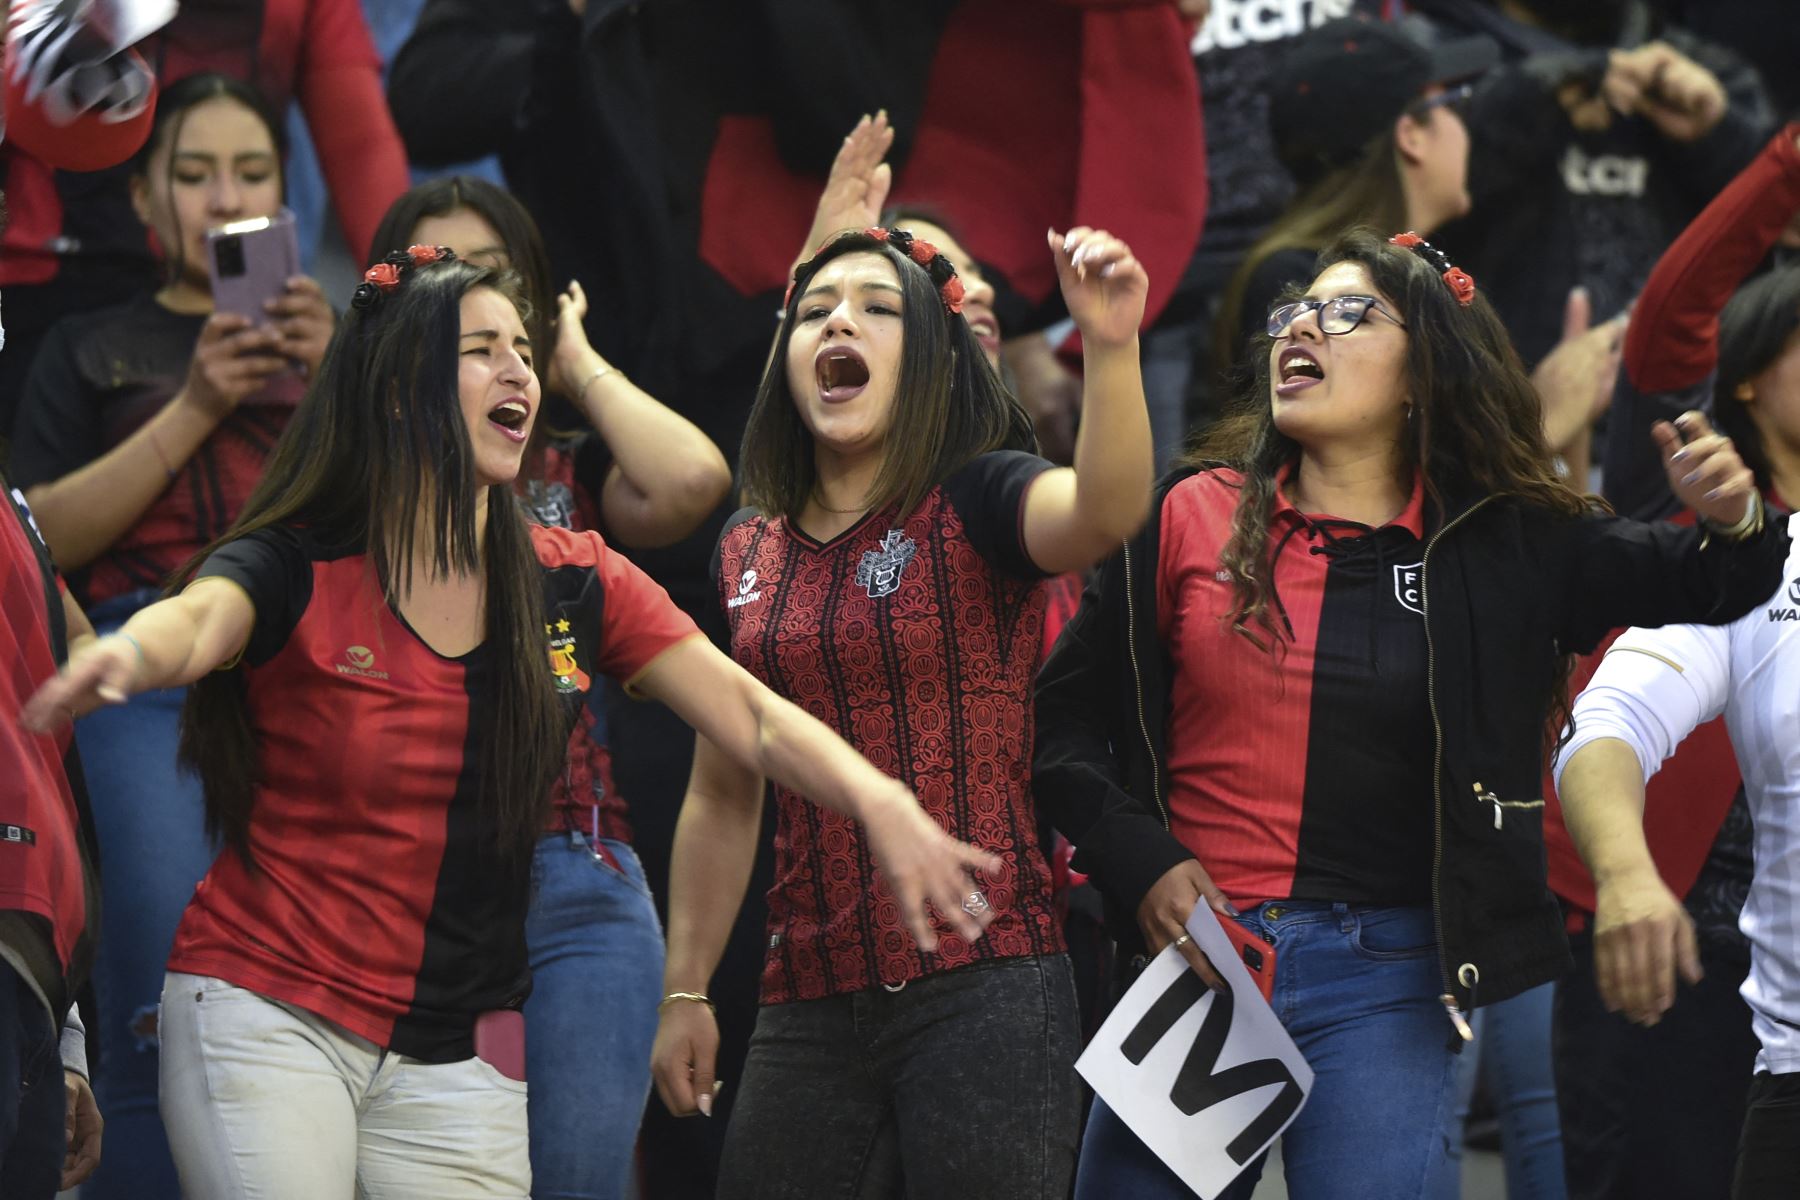 Los hinchas de Melgar animan a su equipo antes del partido de vuelta de la semifinal del torneo de fútbol de la Copa Sudamericana entre Melgar e Independiente del Valle, en el estadio Monumental de la UNSA en Arequipa.
Foto: AFP